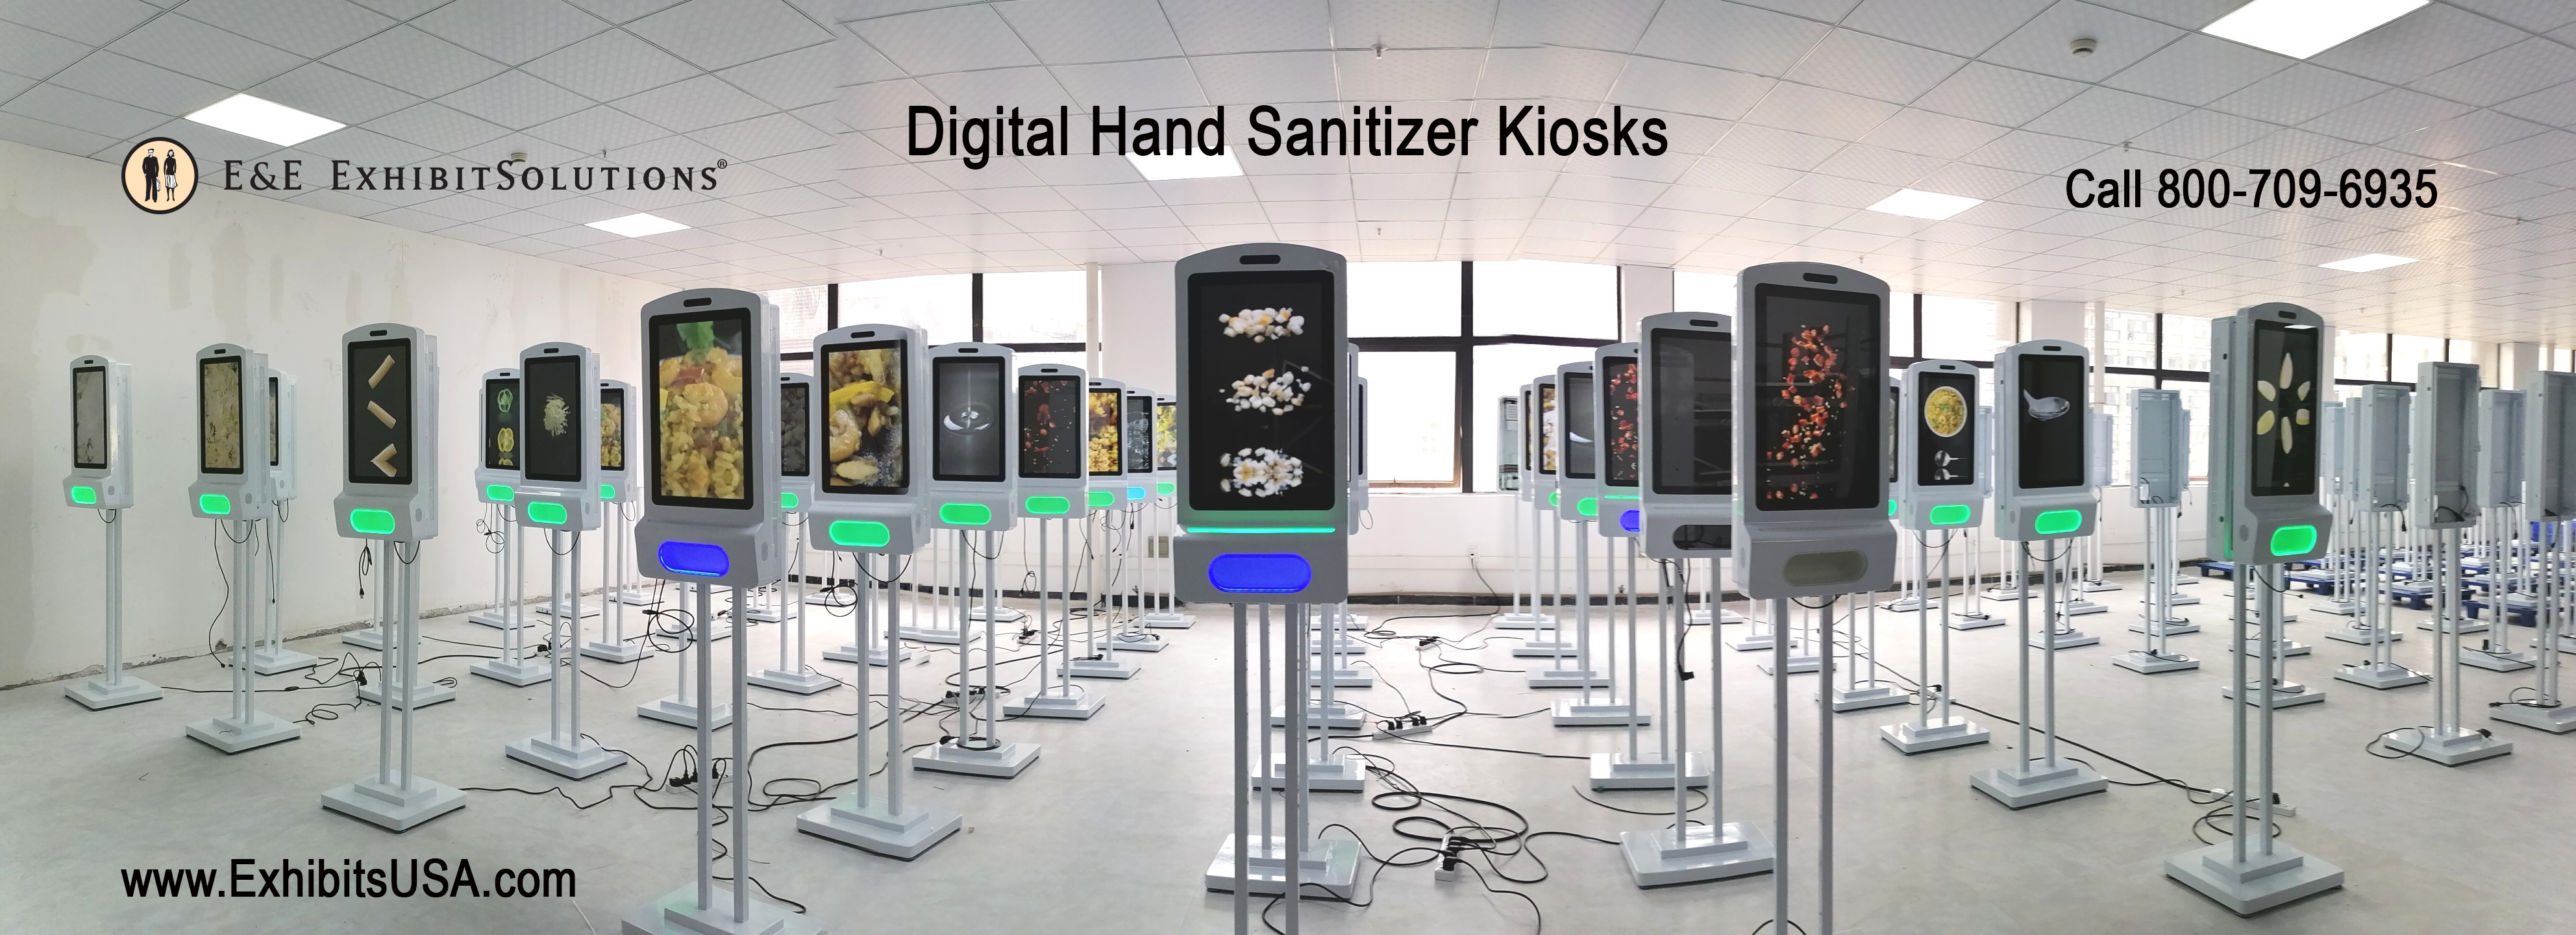 Digital Advertising Hand Sanitizer Kiosks